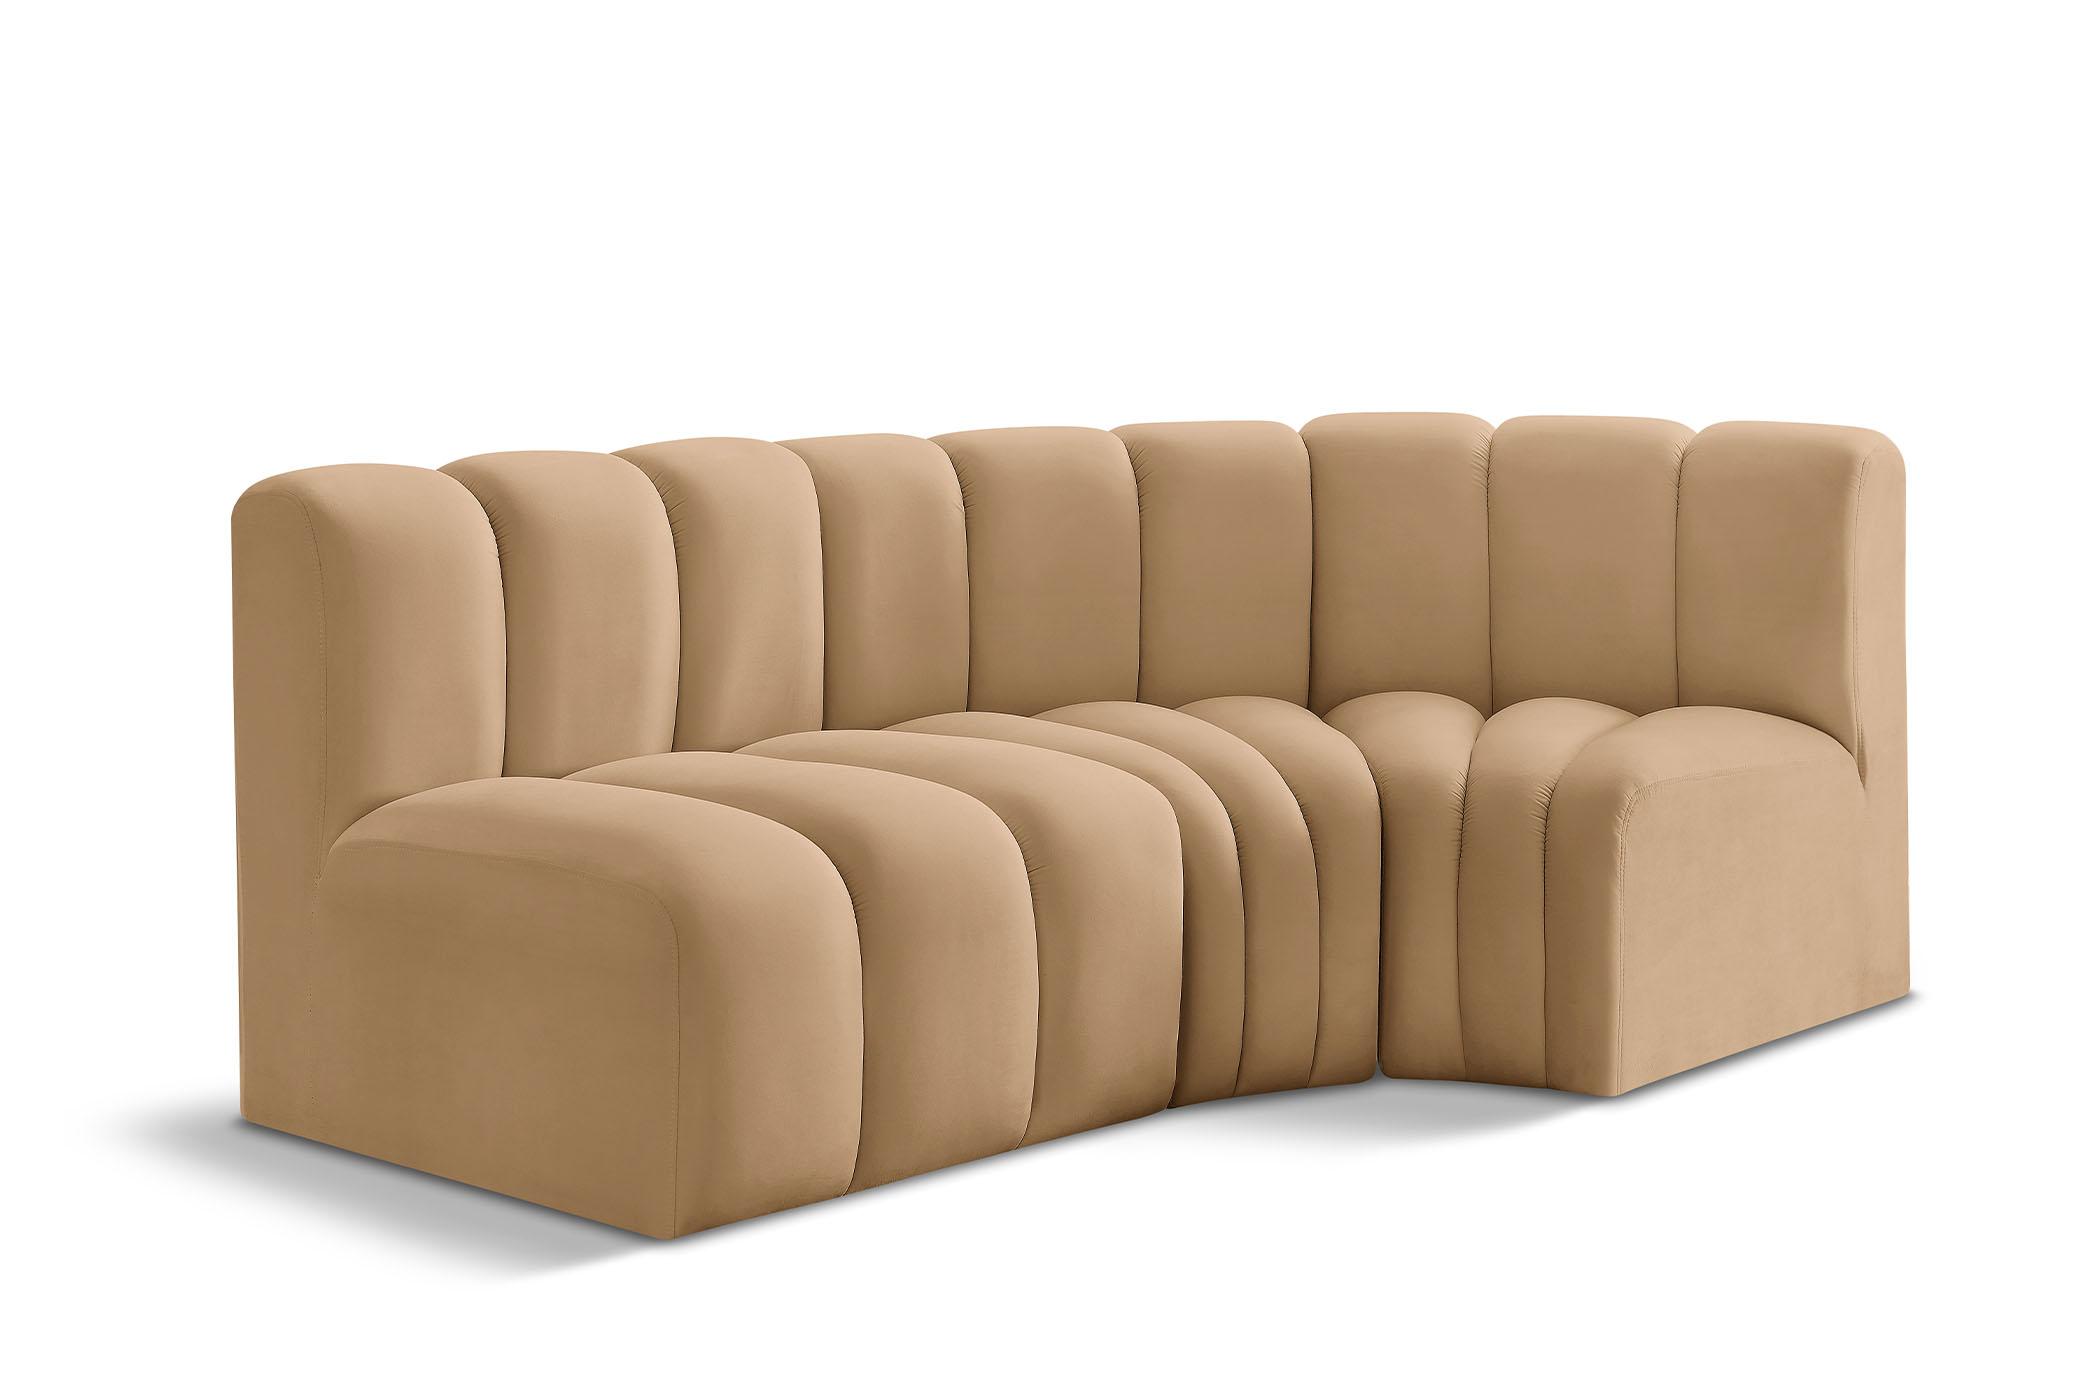 Contemporary, Modern Modular Sectional Sofa ARC 103Camel-S3A 103Camel-S3A in Camel Velvet